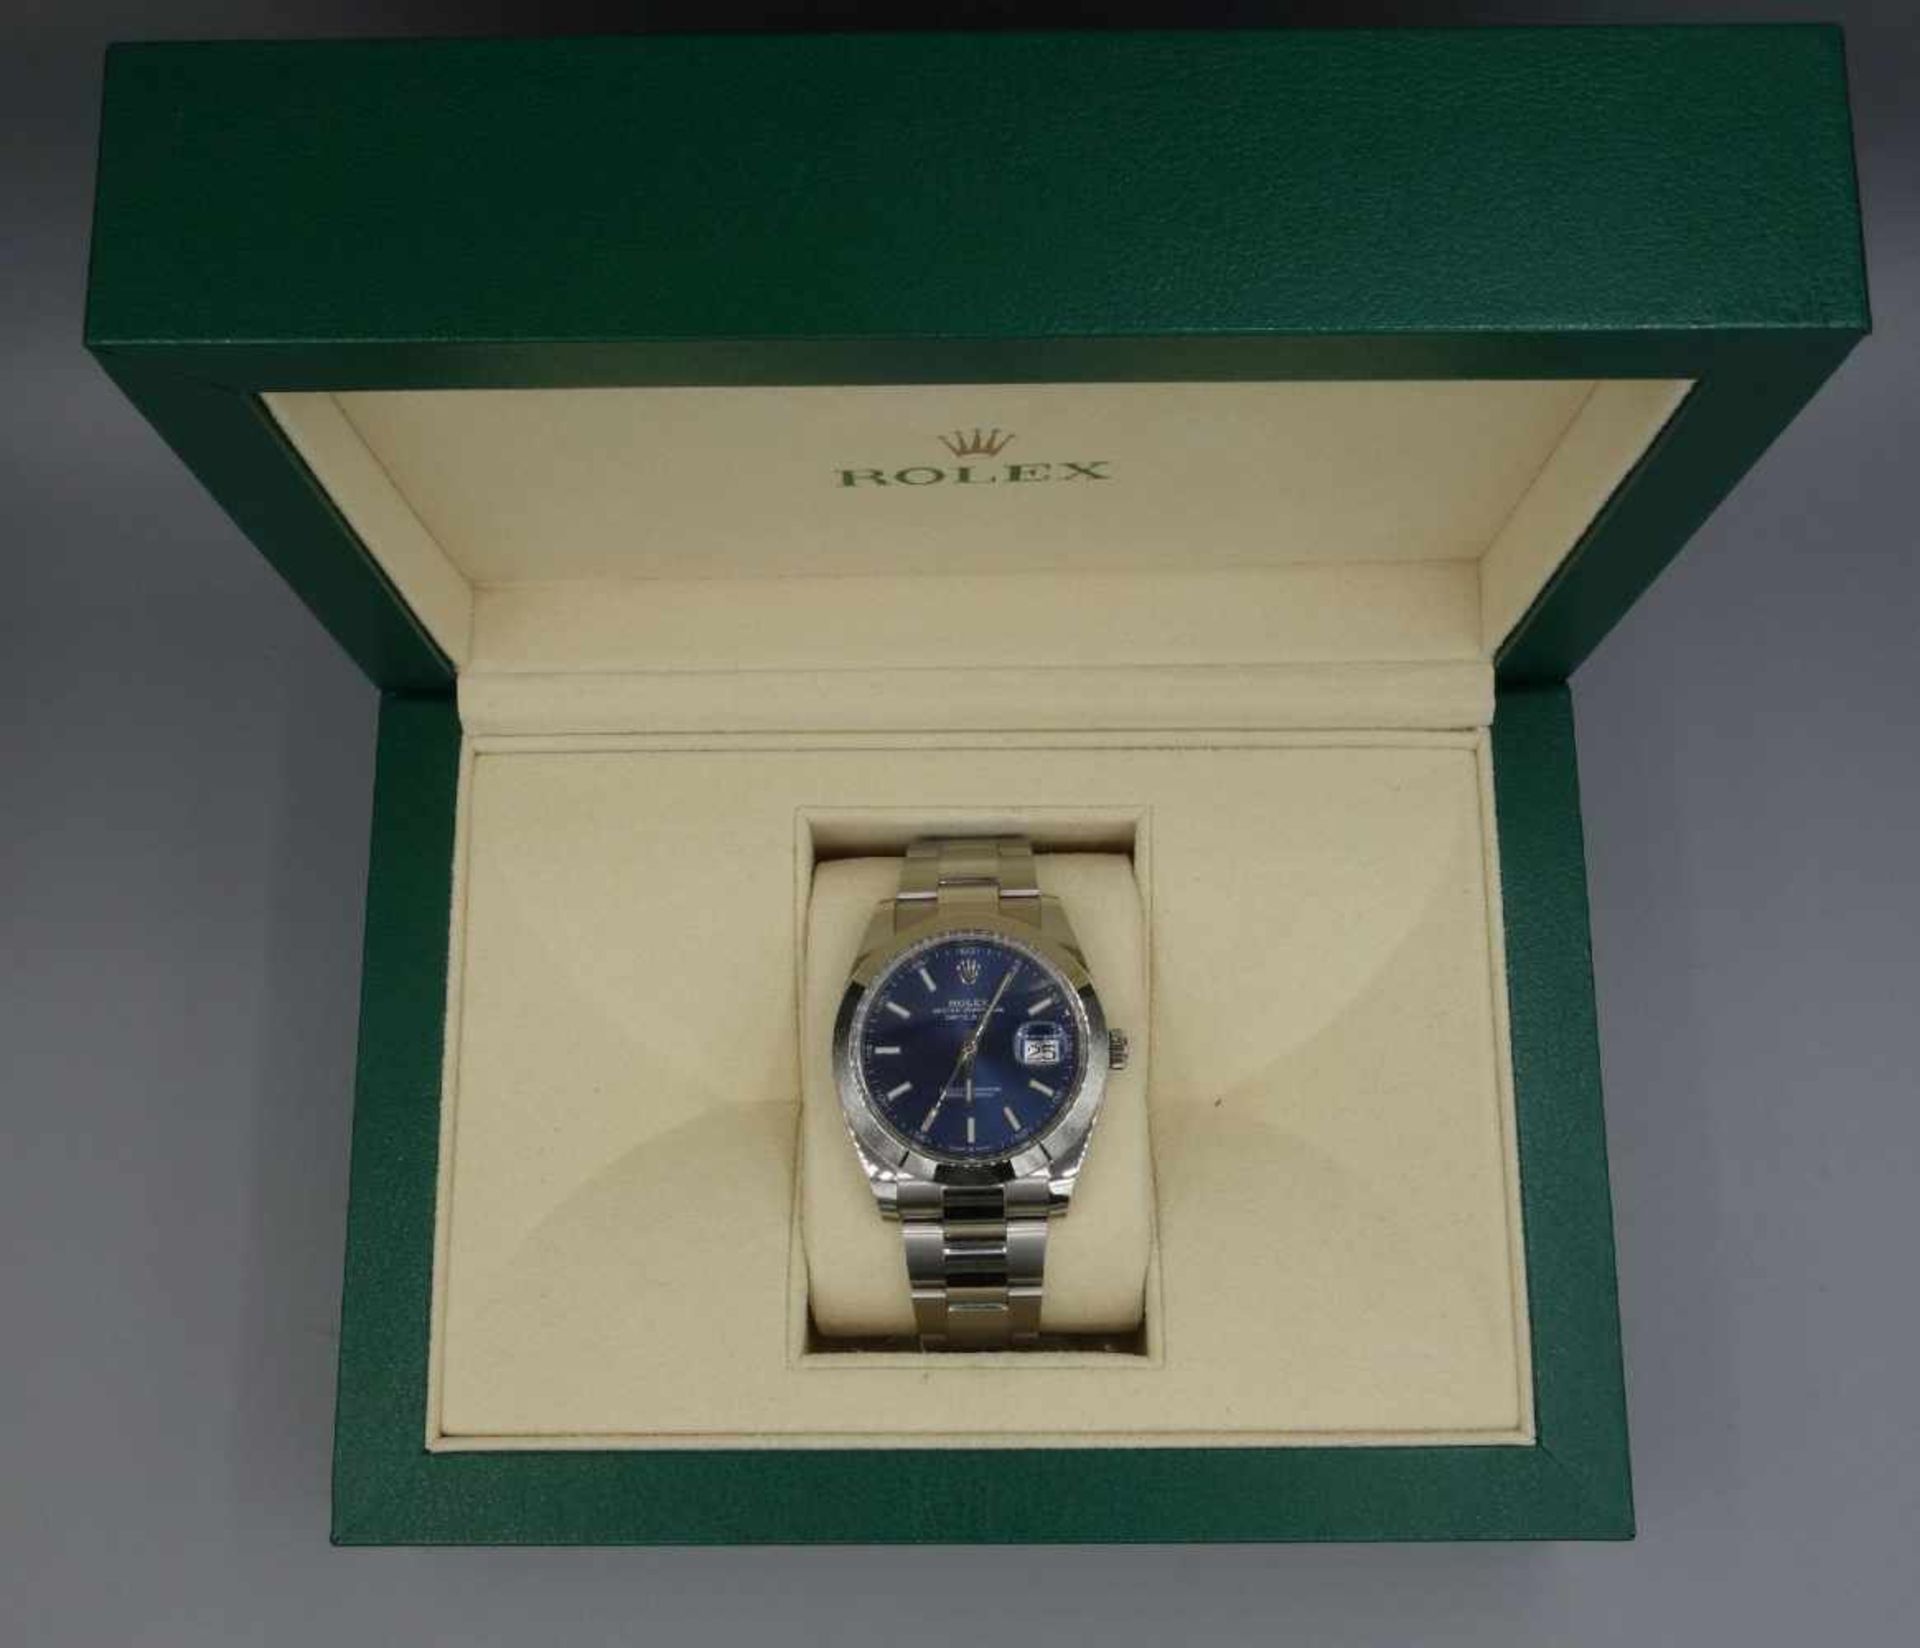 ARMBANDUHR - ROLEX OYSTER PERPETUAL DATEJUST / wristwatch, Rolex Watch Company / Schweiz, erworben - Bild 2 aus 15